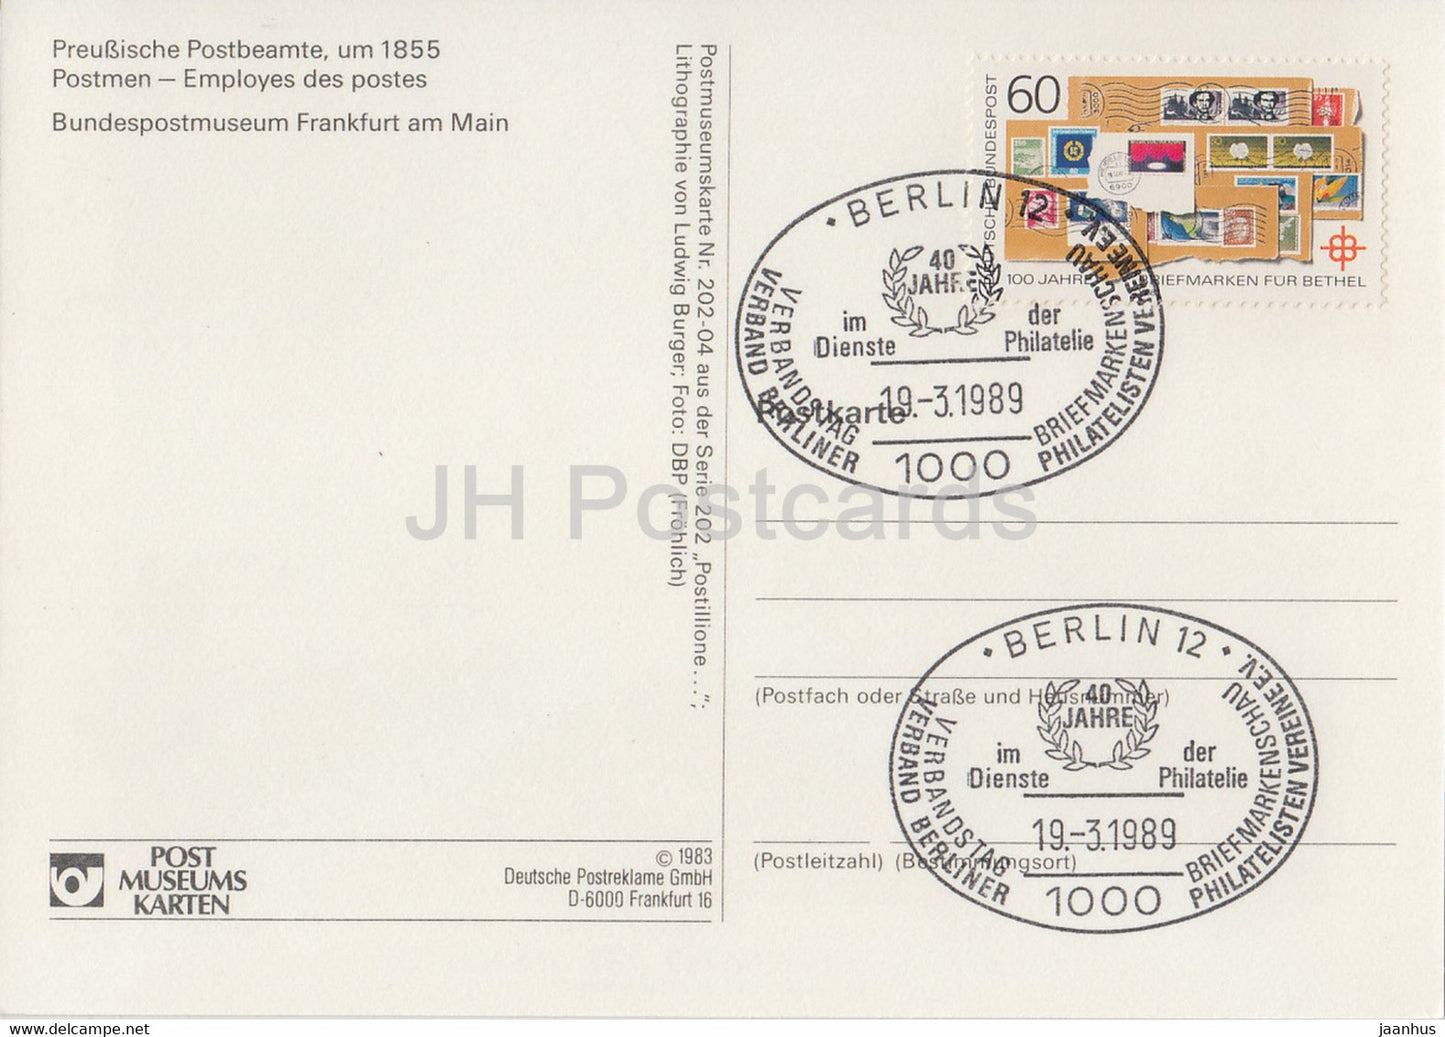 Preußische Postbeamte - Postmänner - Postdienst - 1983 - Deutschland - unbenutzt